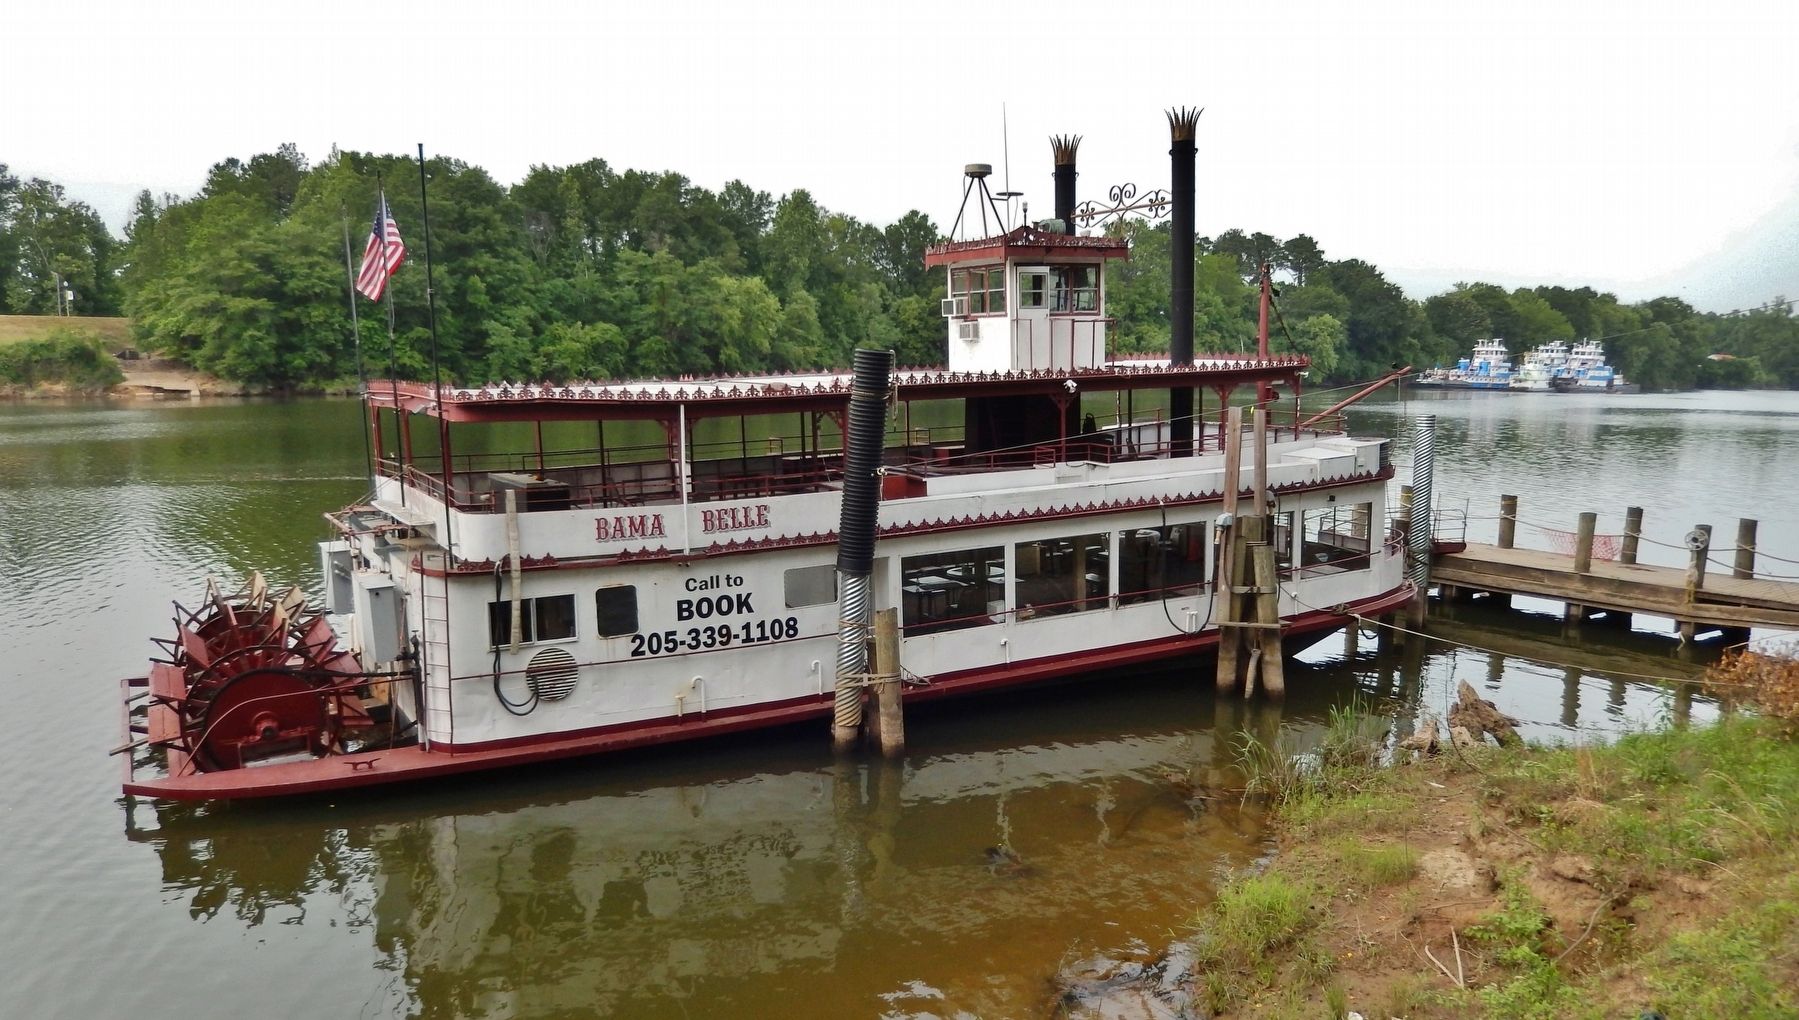 Bama Belle Paddlewheel Riverboat image. Click for full size.